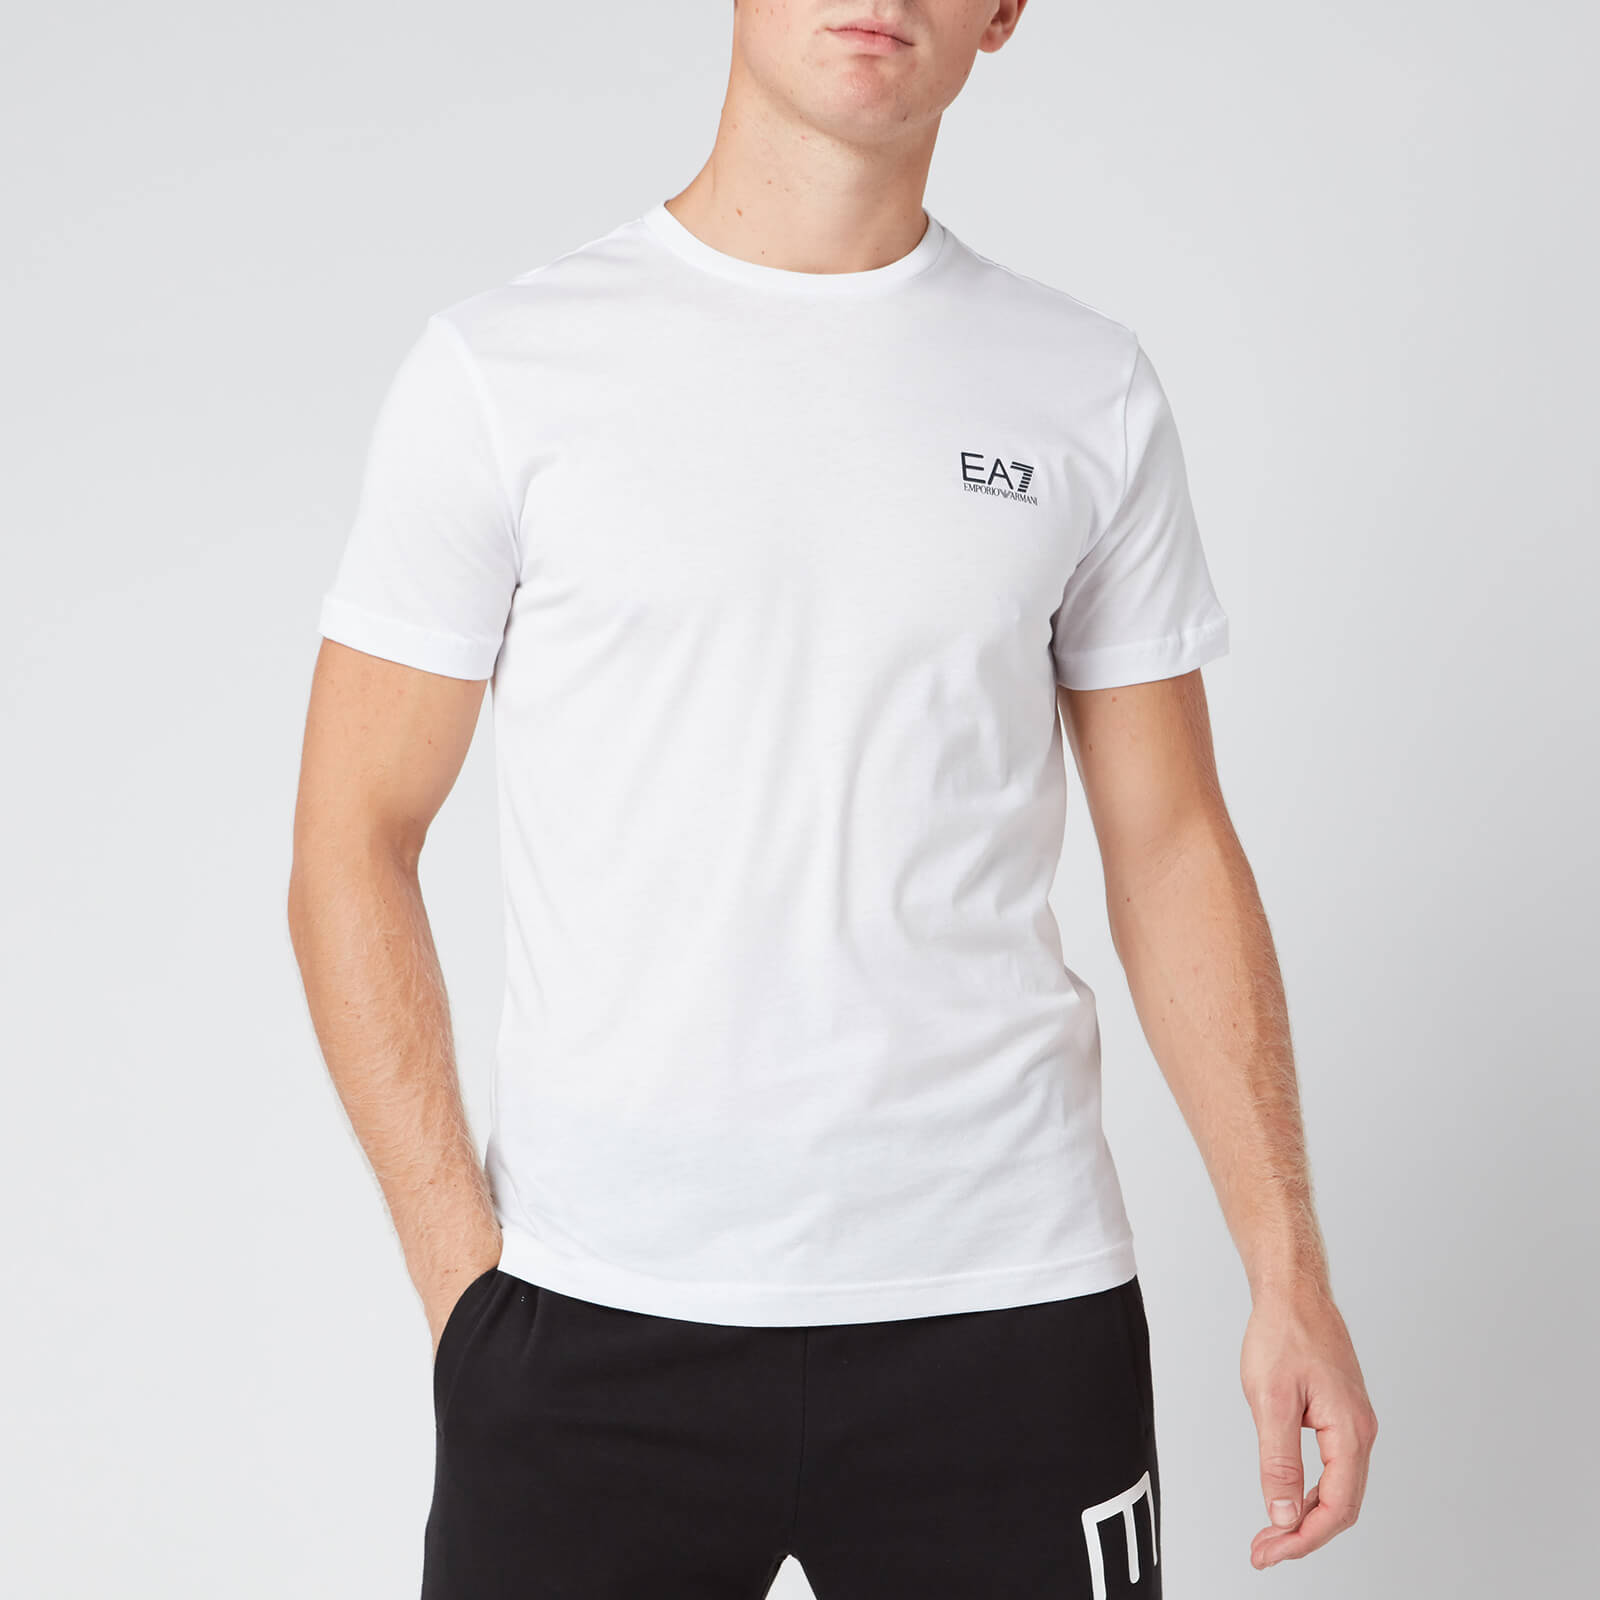 Ea7 Men's Identity T-Shirt - White - Xxl